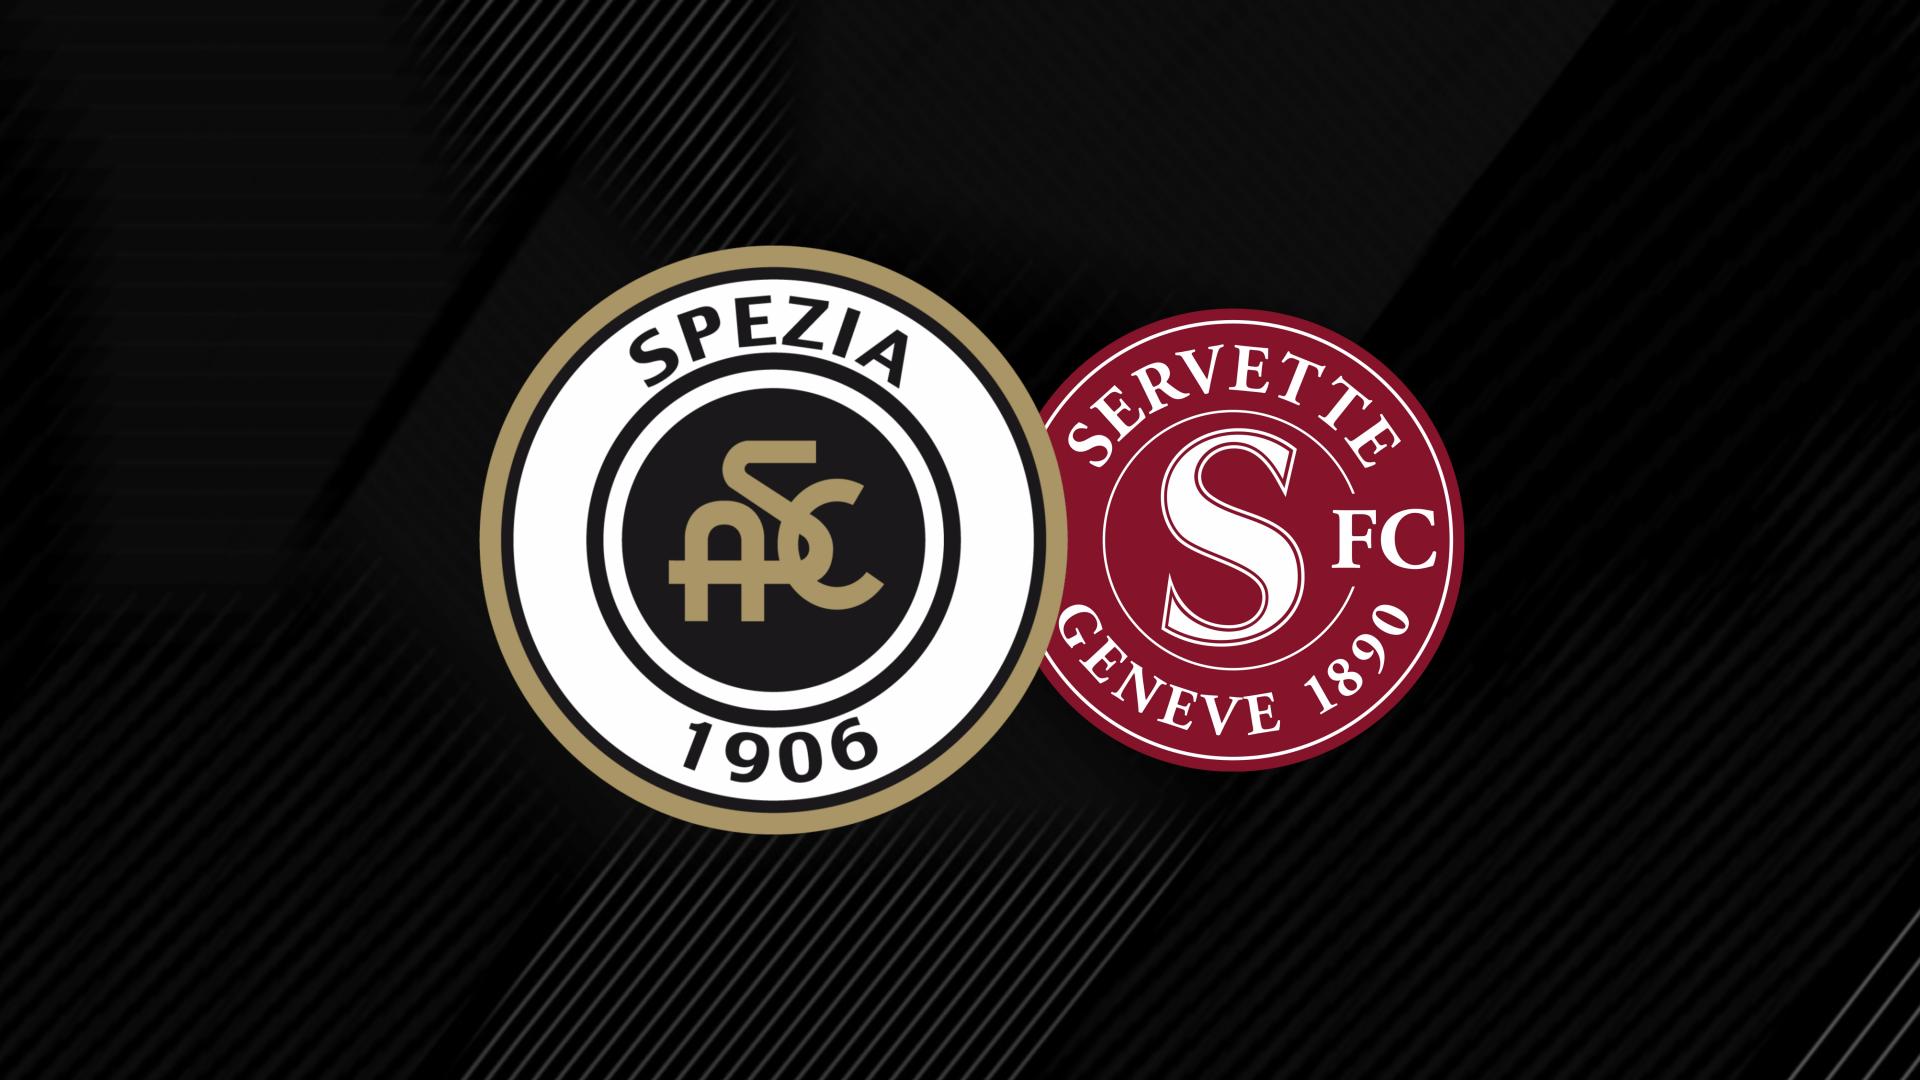 Amichevole: Spezia - Servette 3-0